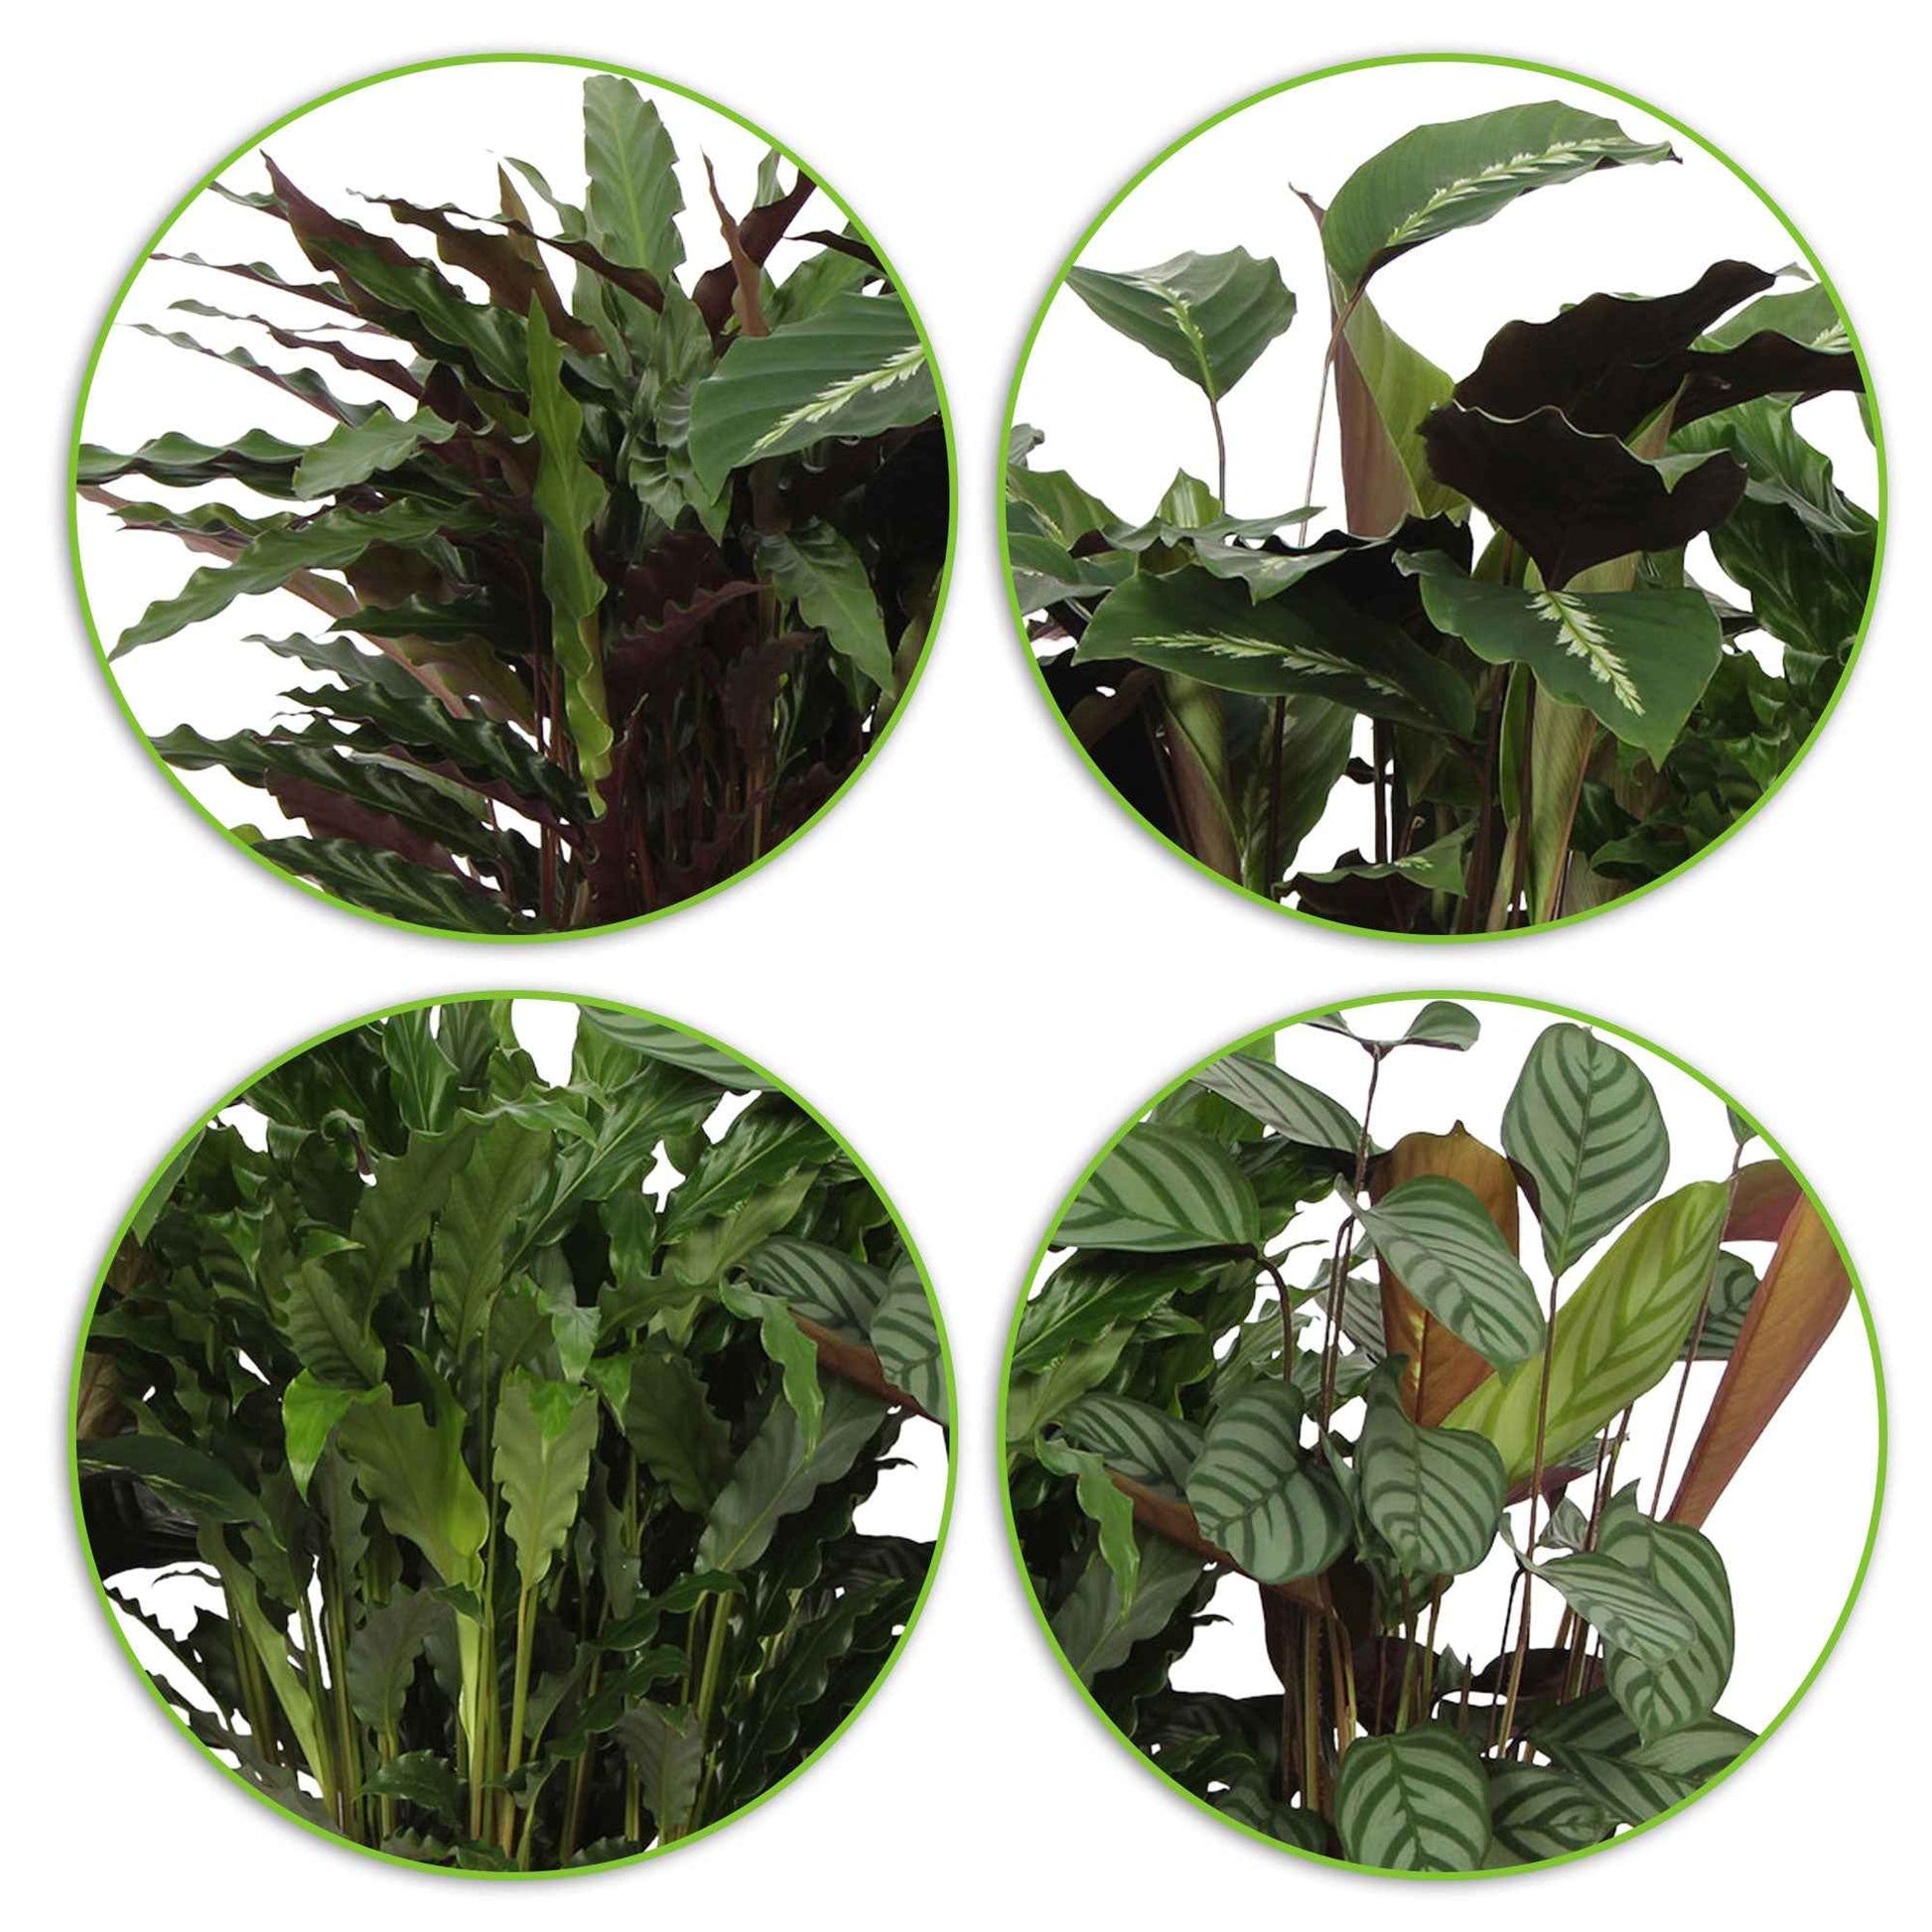 4x Calathea - Mischung Luftreinigende Pflanzen inkl. Dekotopf - Beliebte grüne Zimmerpflanzen